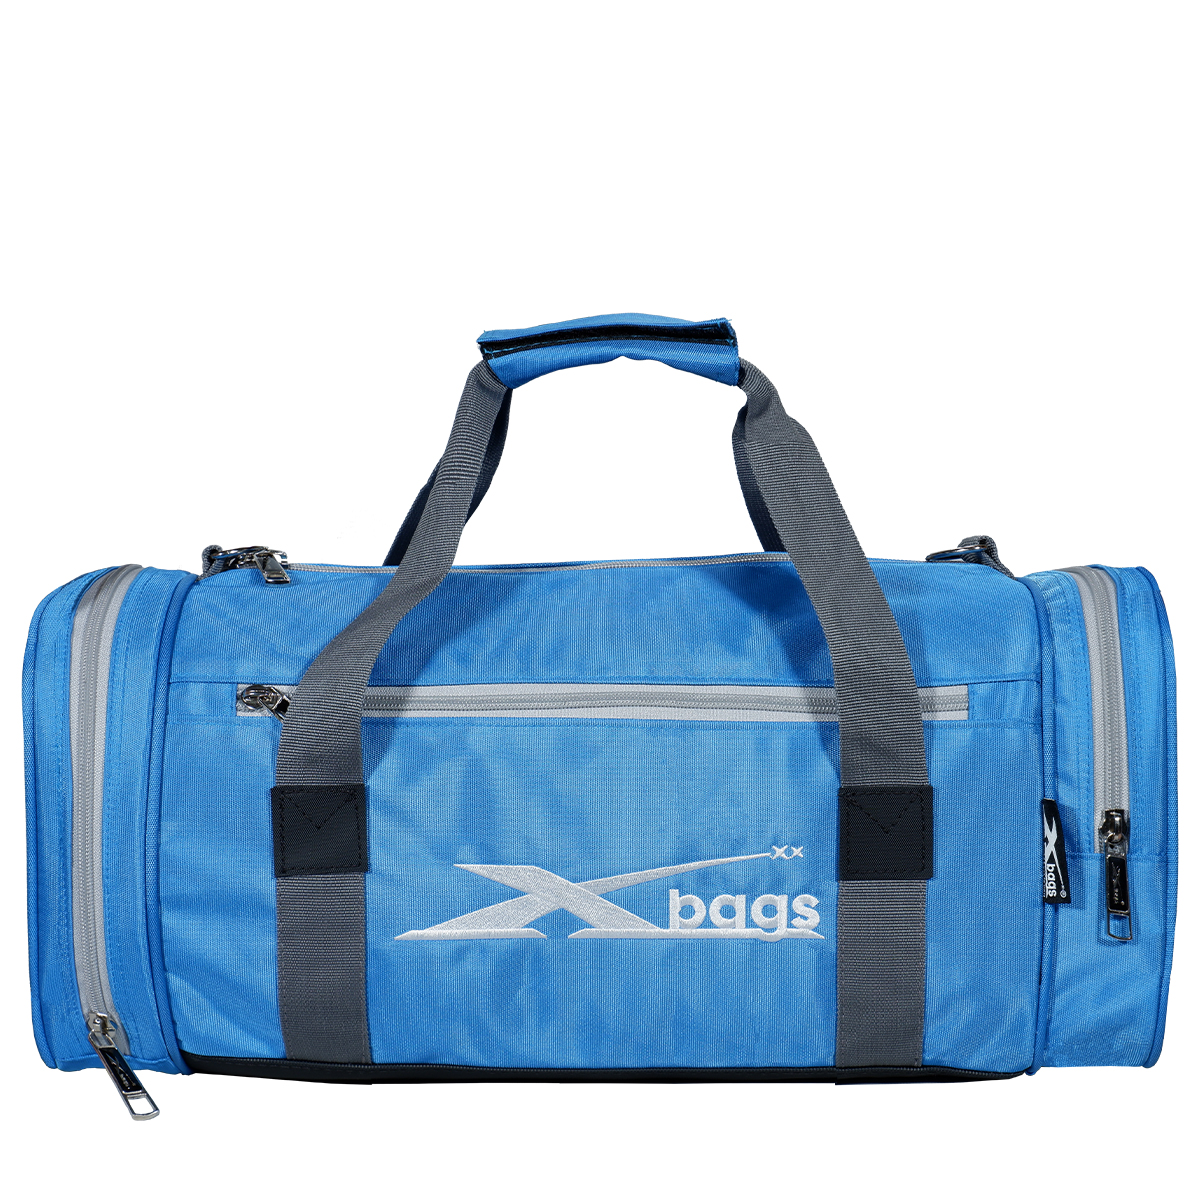 Túi tập gym, túi trống du lịch chống nước XBAGS Xb 6003 túi thể thao nhỏ gọn